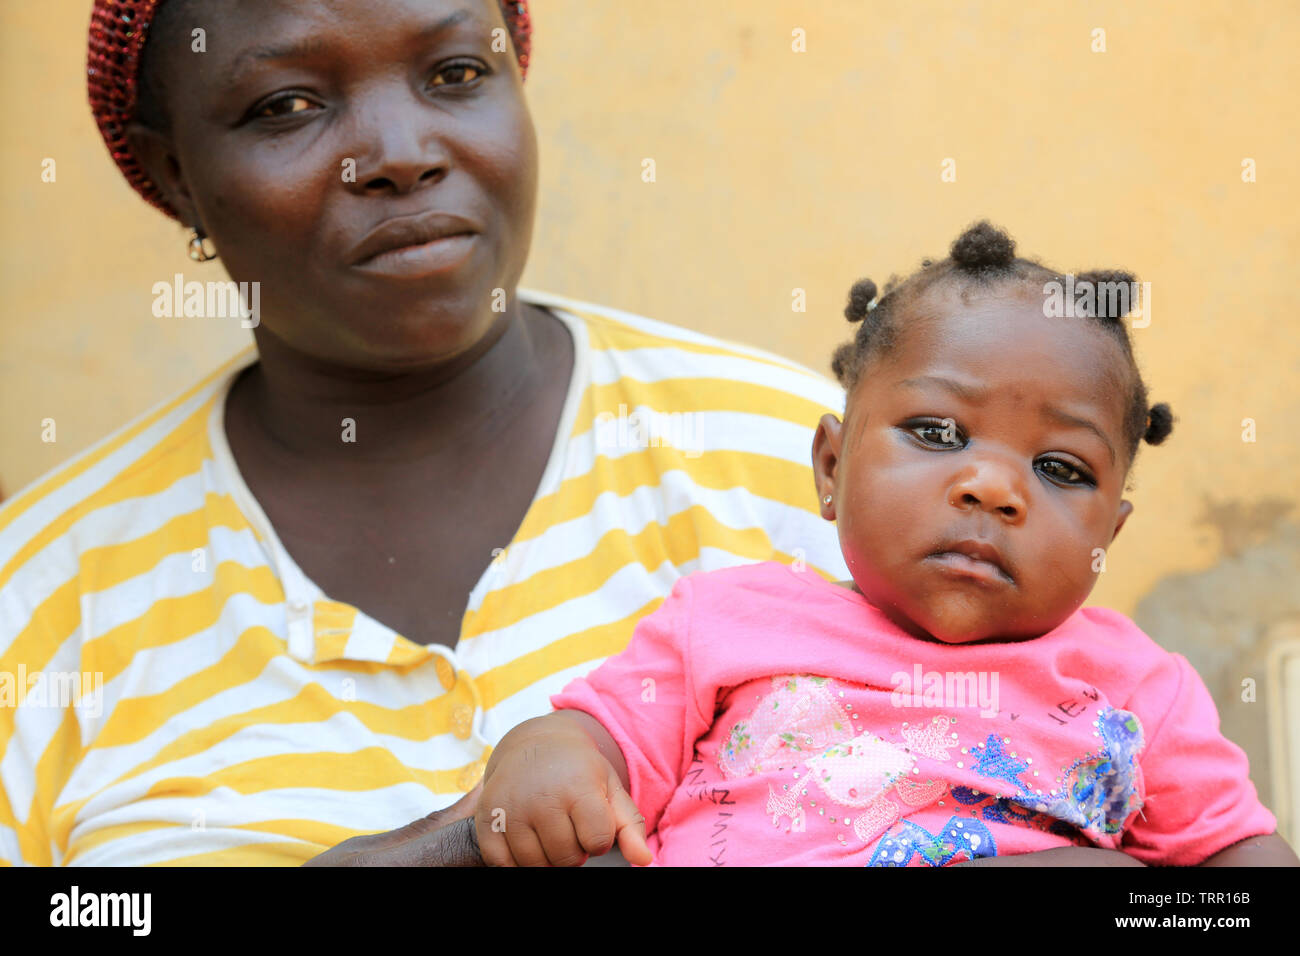 Maman togolaise et sa petite fille dans les bras. La convenzione di Lomé. Il Togo. Afrique de l'Ouest. Foto Stock